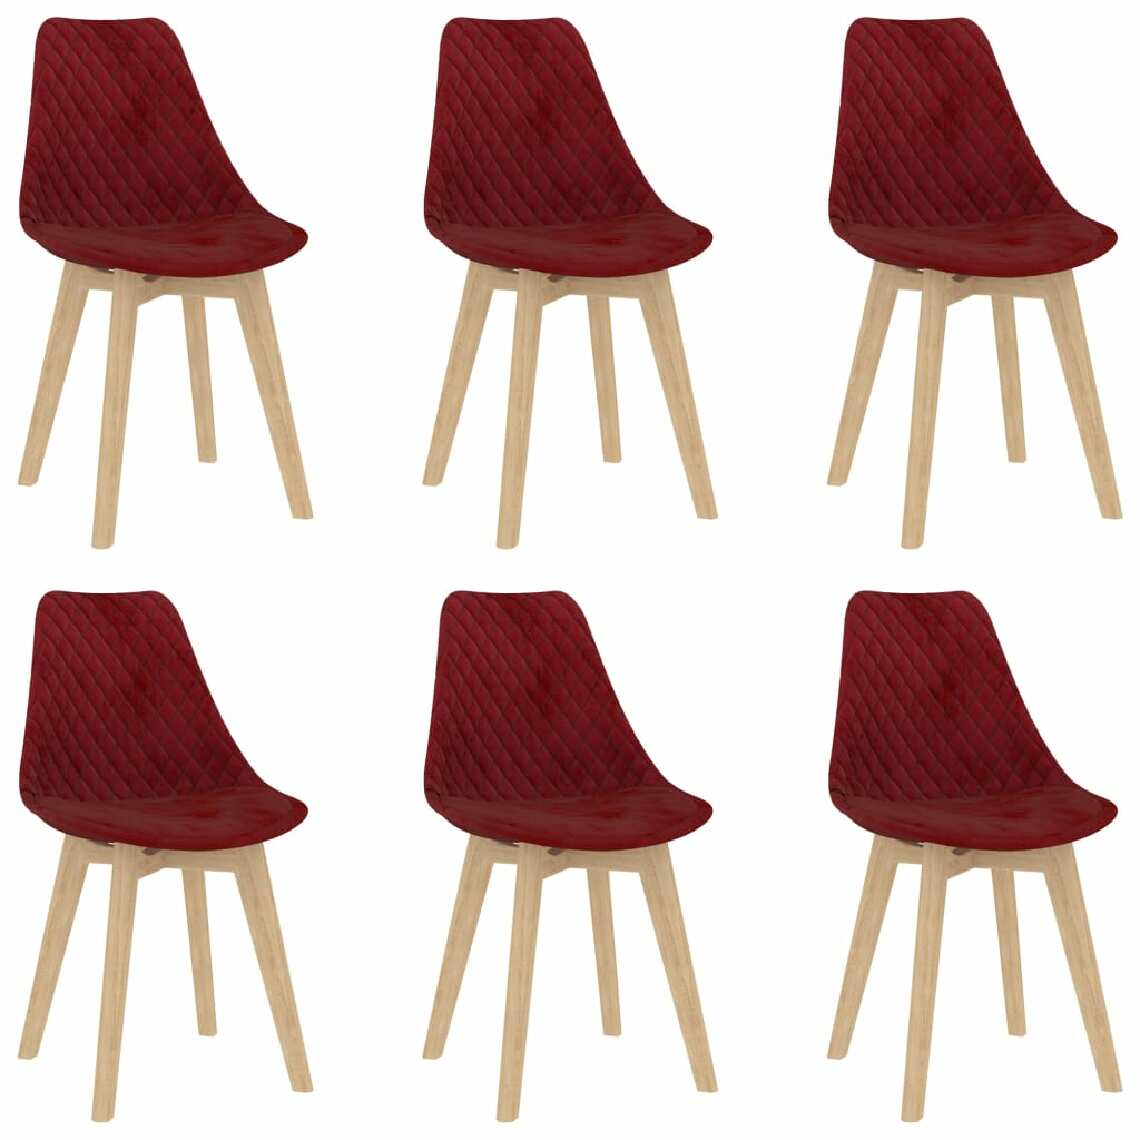 Chunhelife - Chunhelife Chaises de salle à manger 6 pcs Rouge bordeaux Velours - Chaises